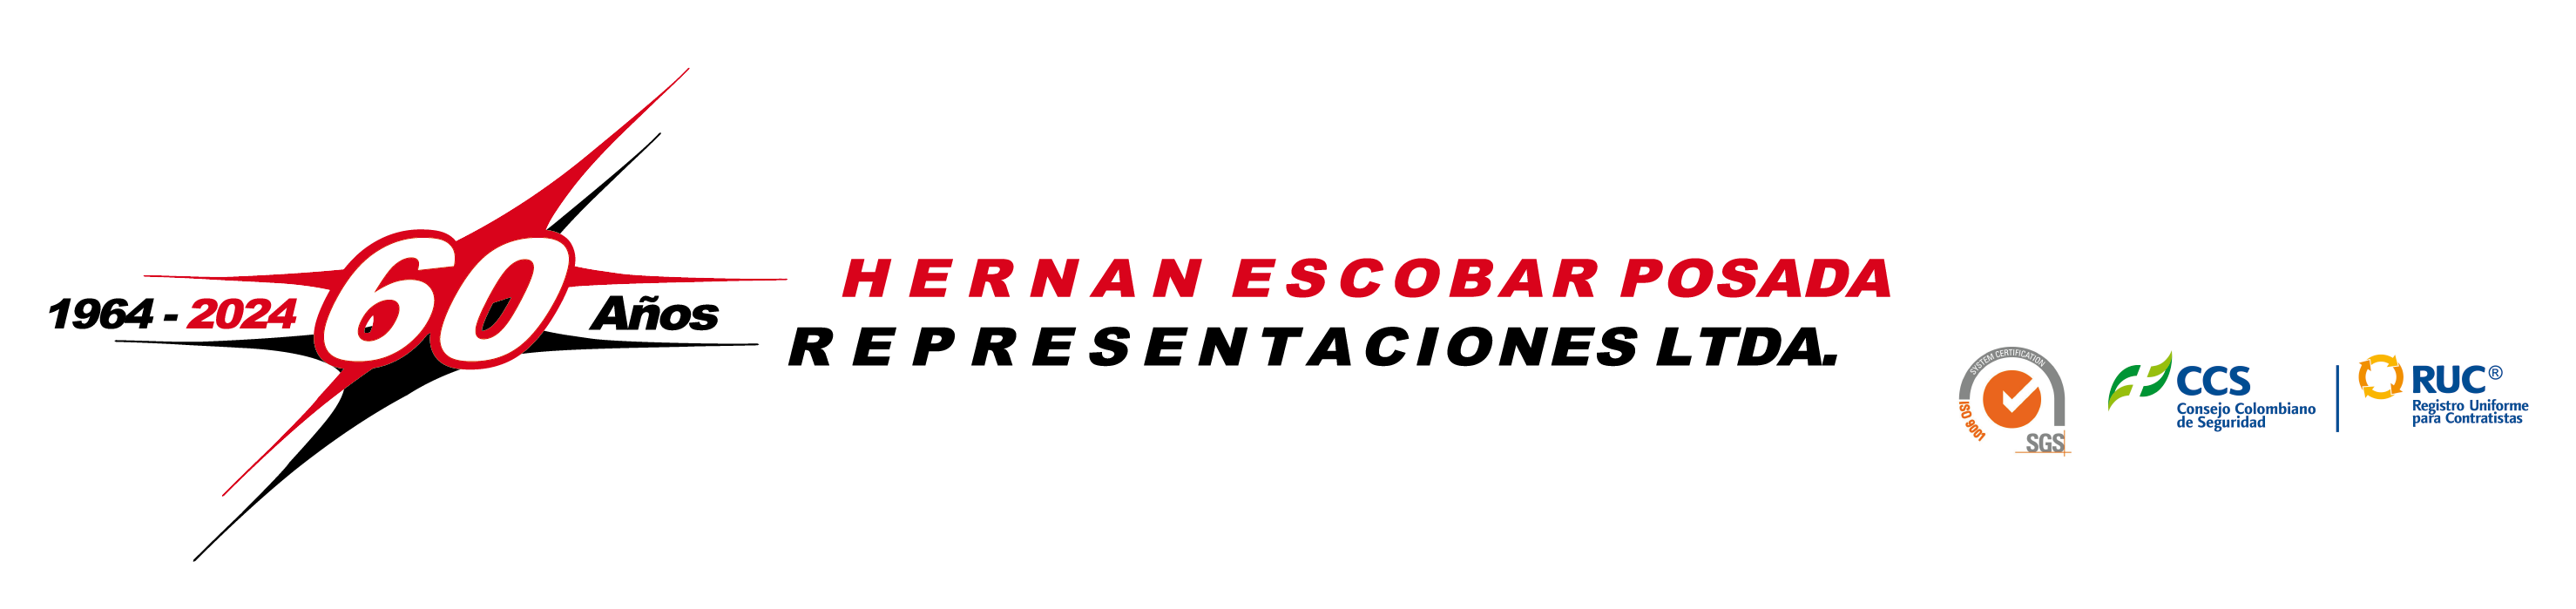 Hernan Escobar